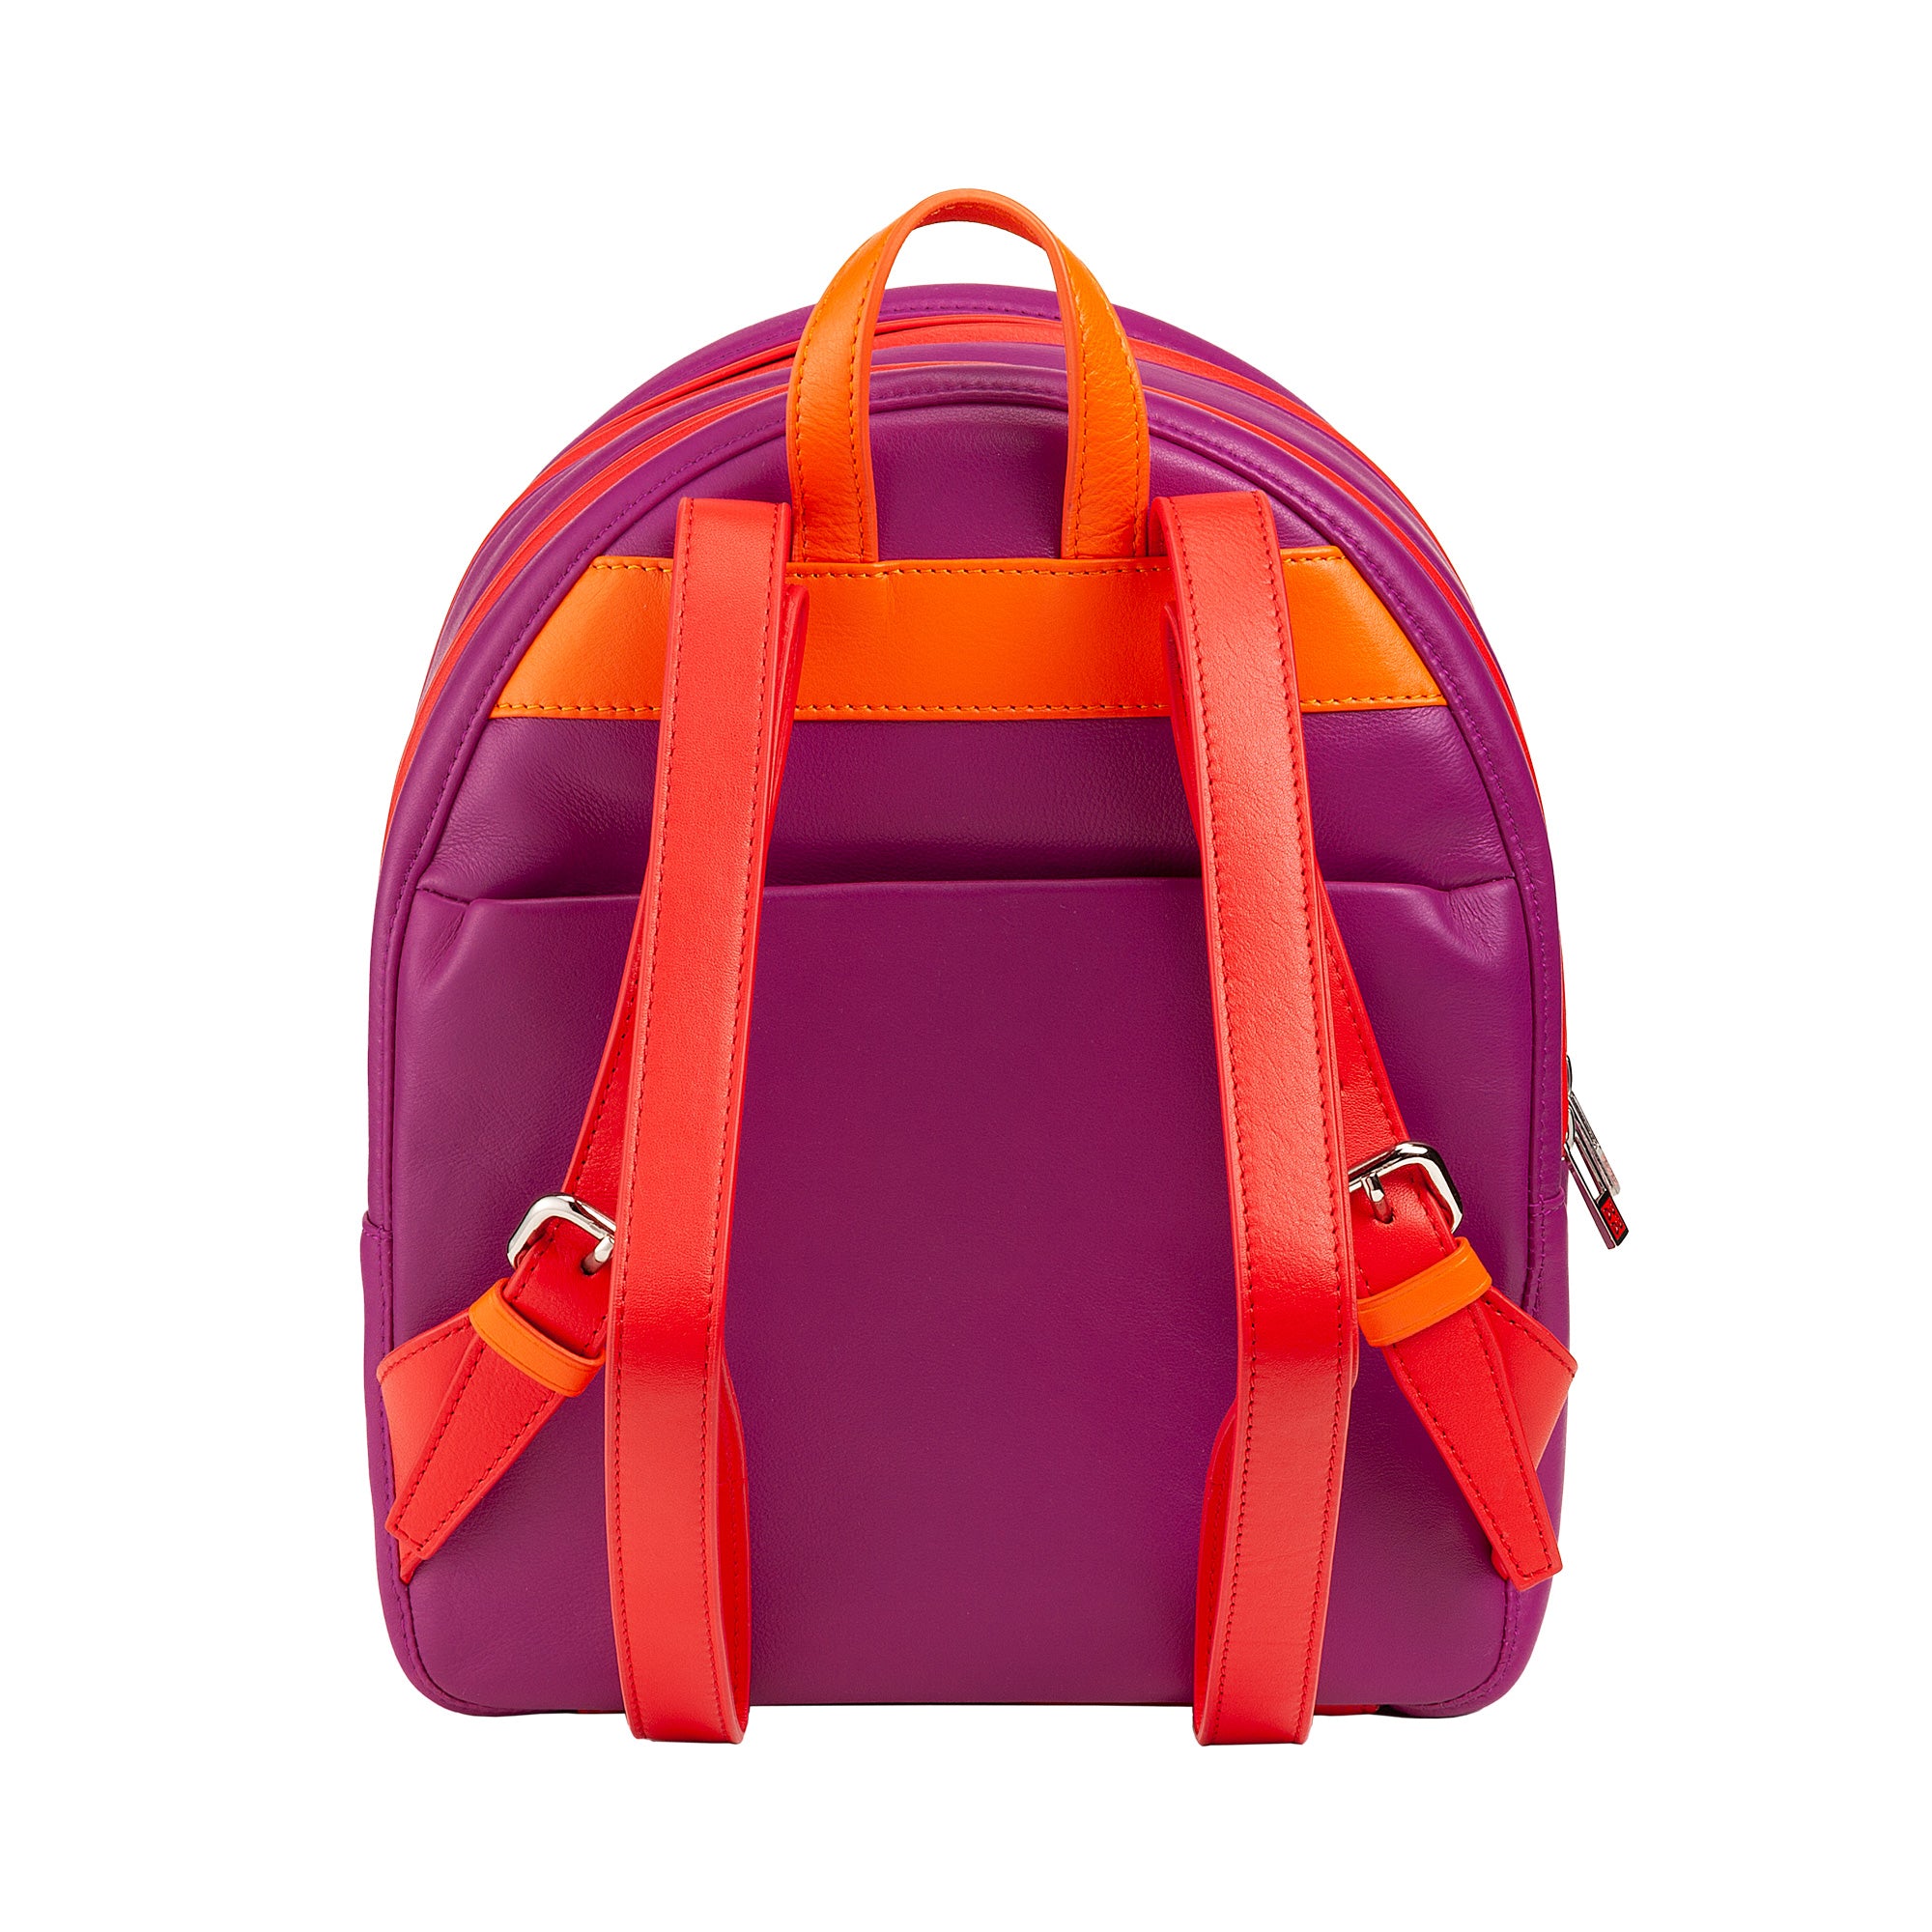 Colorful Backpack Favignana Fuchsia Dudubags su Artisia Store